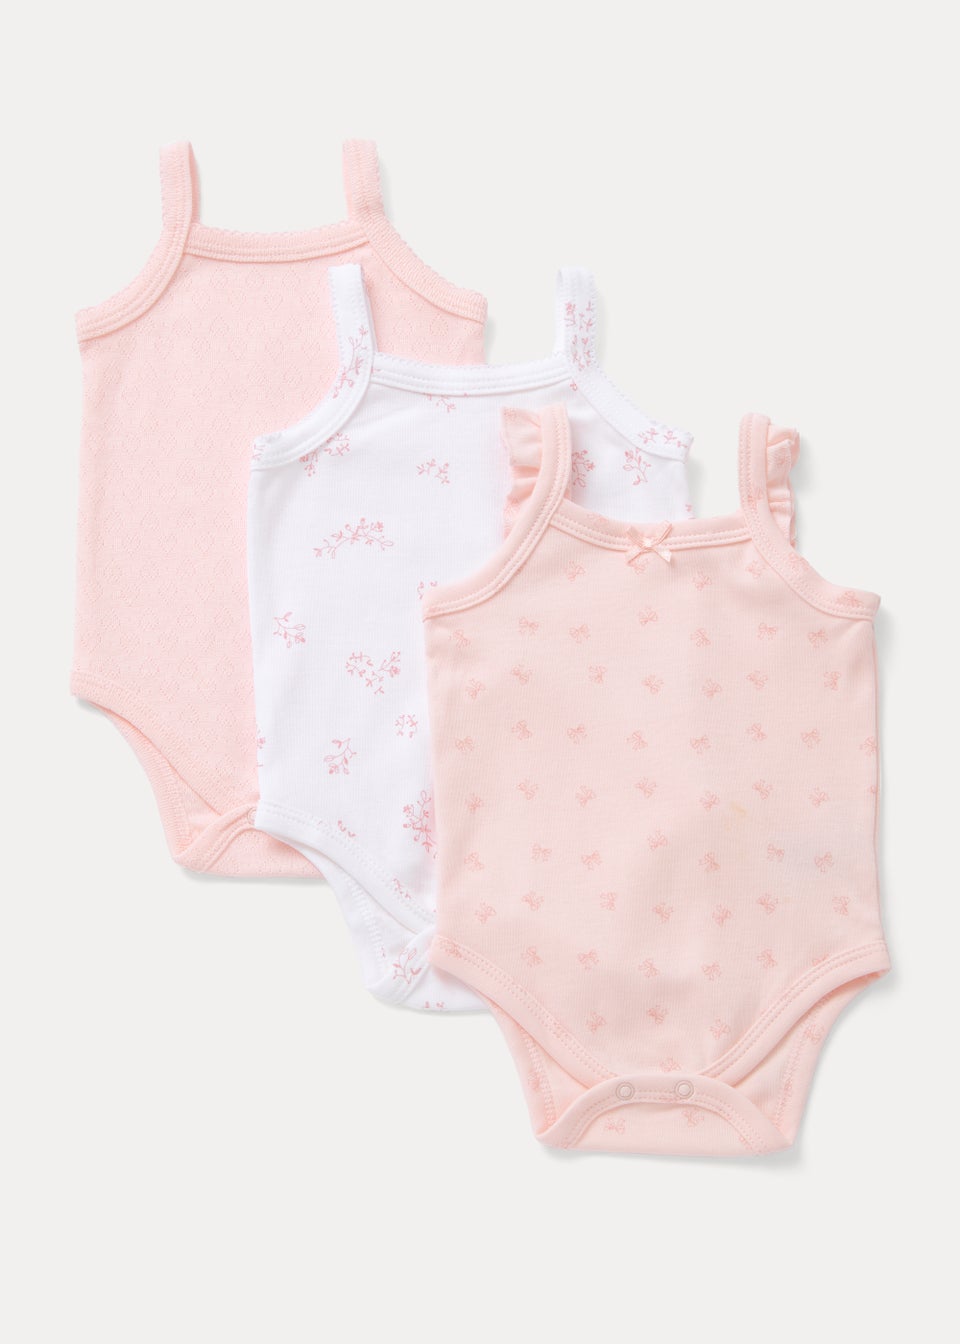 Baby 3 Pack Pink Cami Bodysuits (Newborn-23mths)